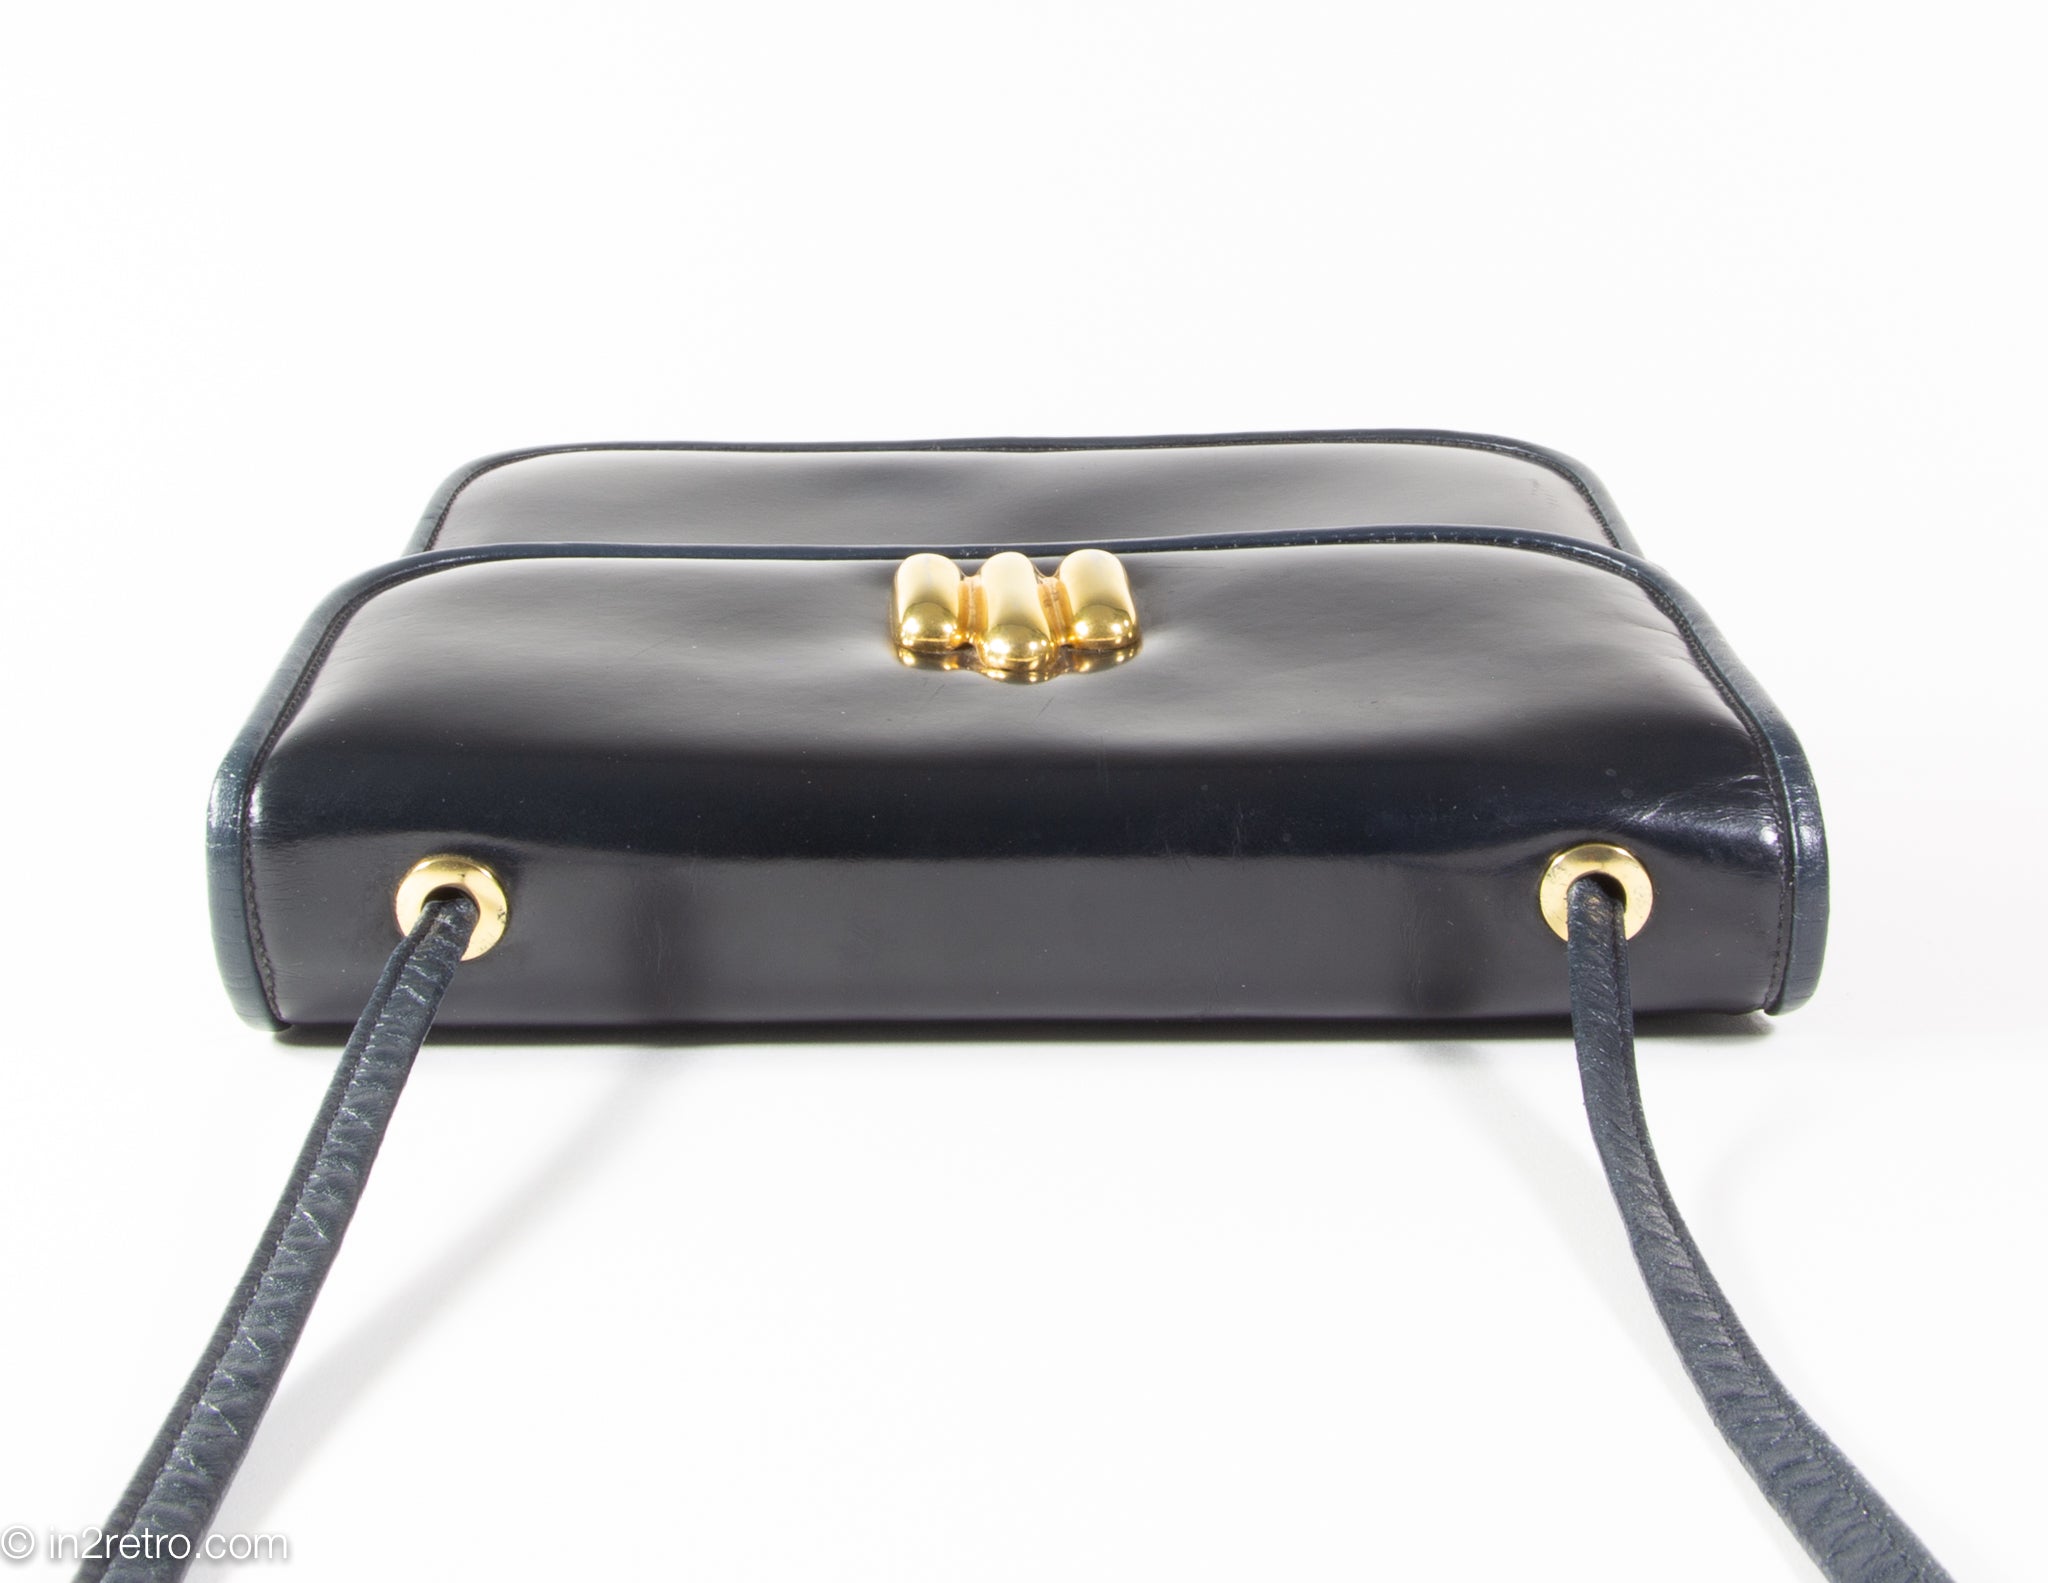 Anne Klein Vintage Designer Leather Shoulder Bag/Crossbody